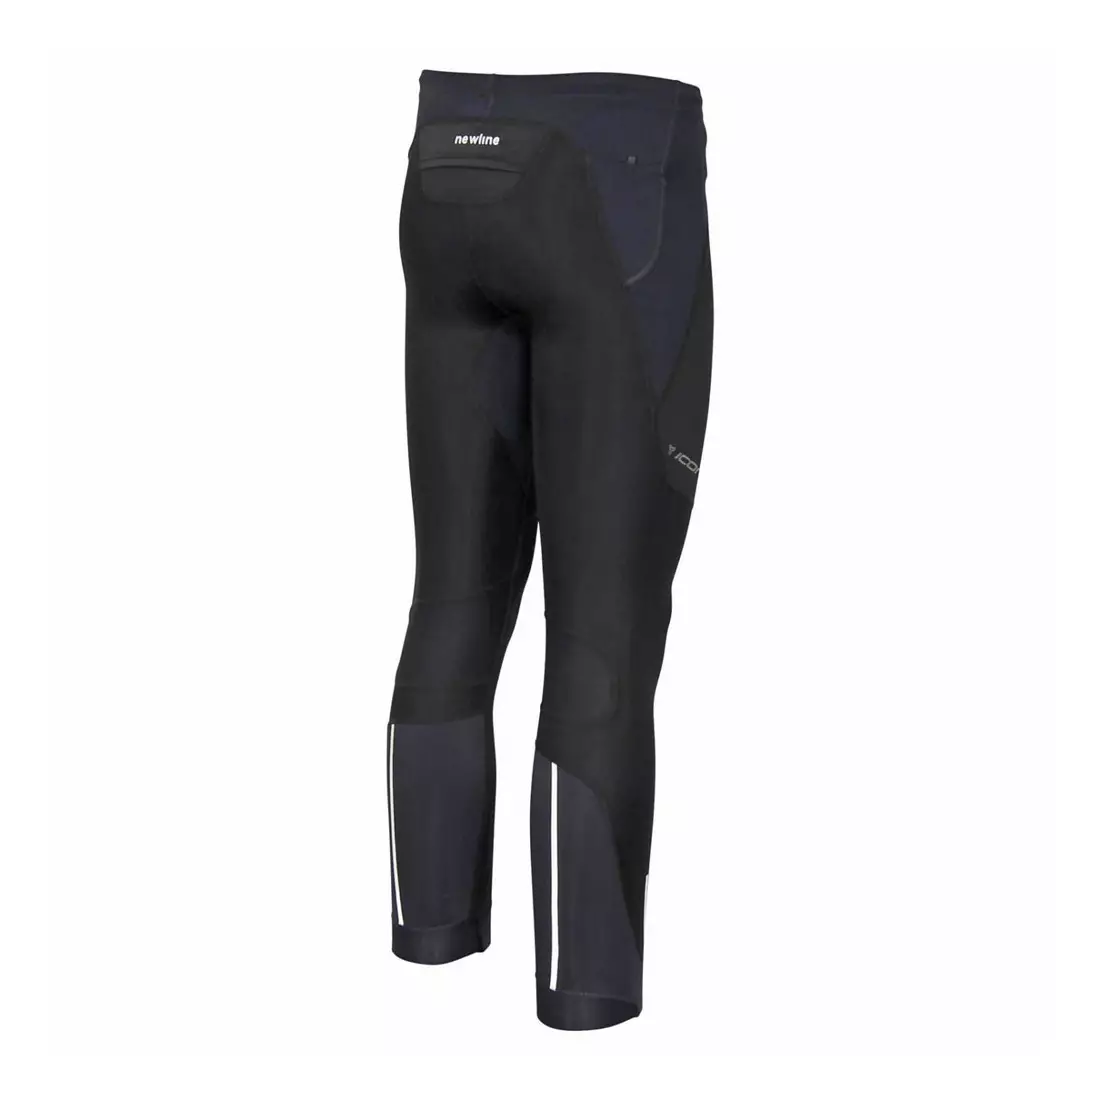 NEWLINE ICONIC PÉROVÉ KALHOTY 11449-184 - pánské běžecké kalhoty, barva: černá